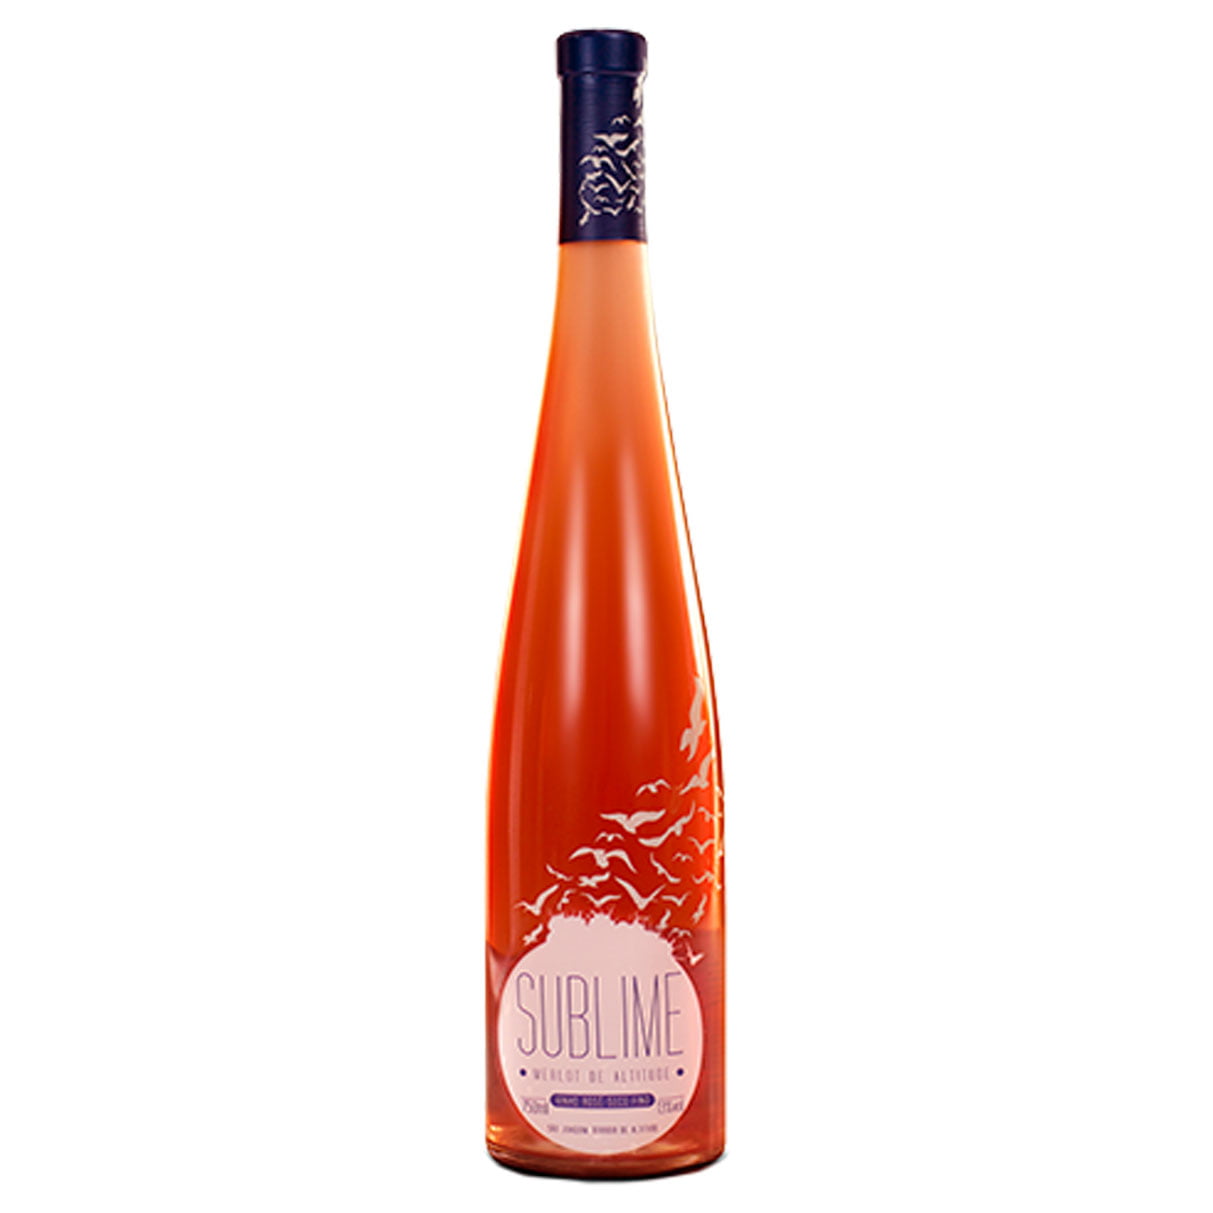 Monte Agudo Sublime Merlot Rosé 2020